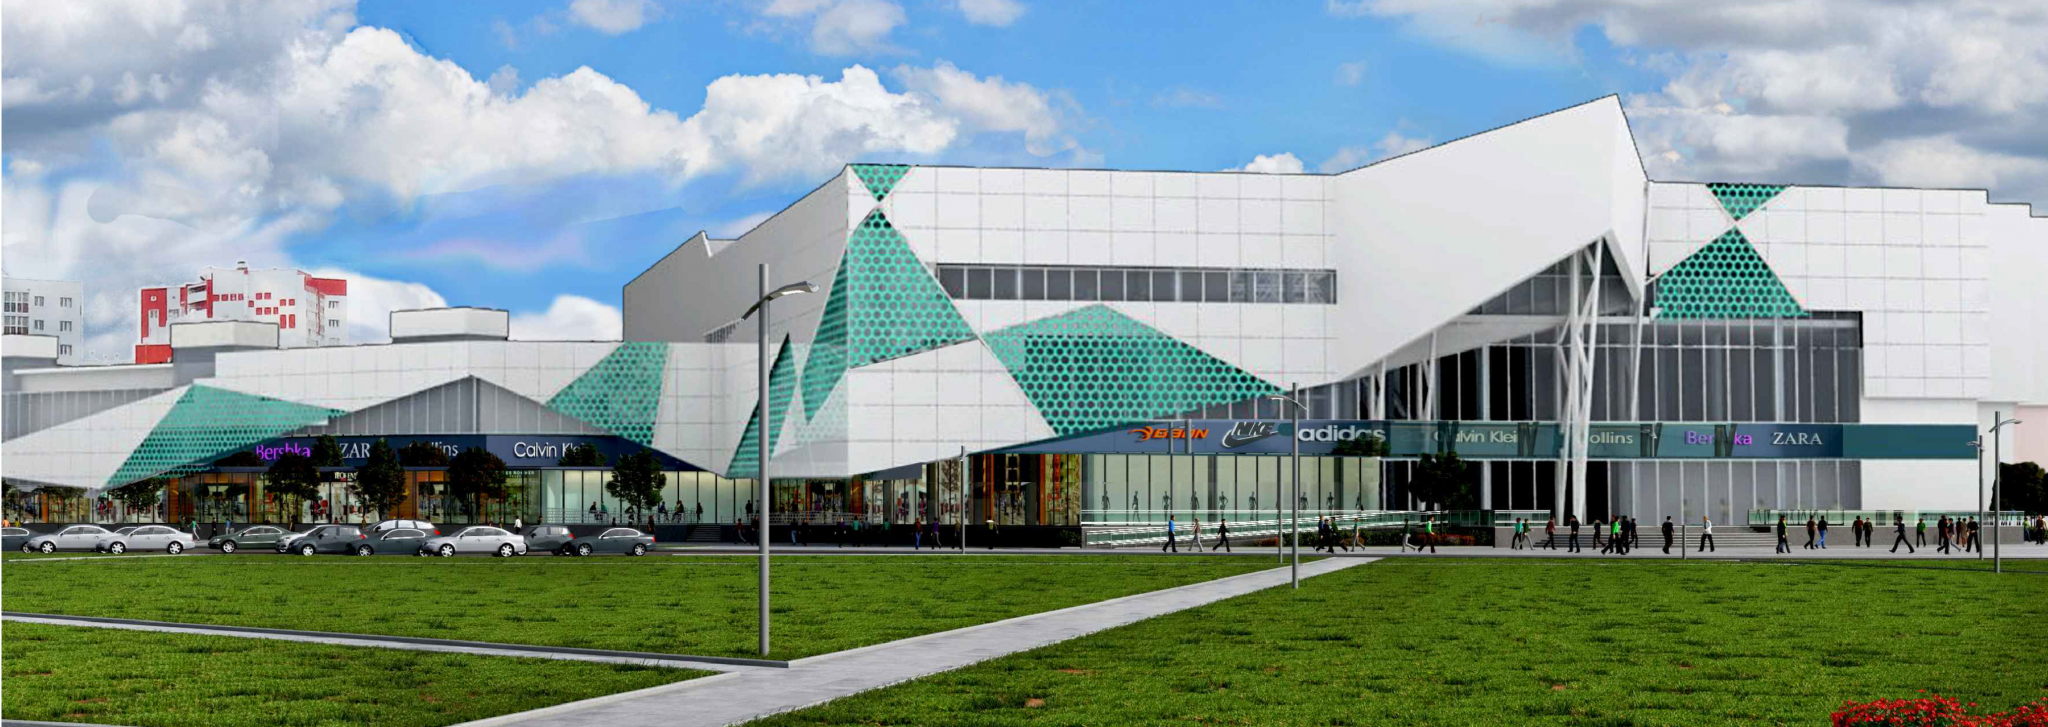 В Спутнике планируется построить торговый центр с кинотеатром